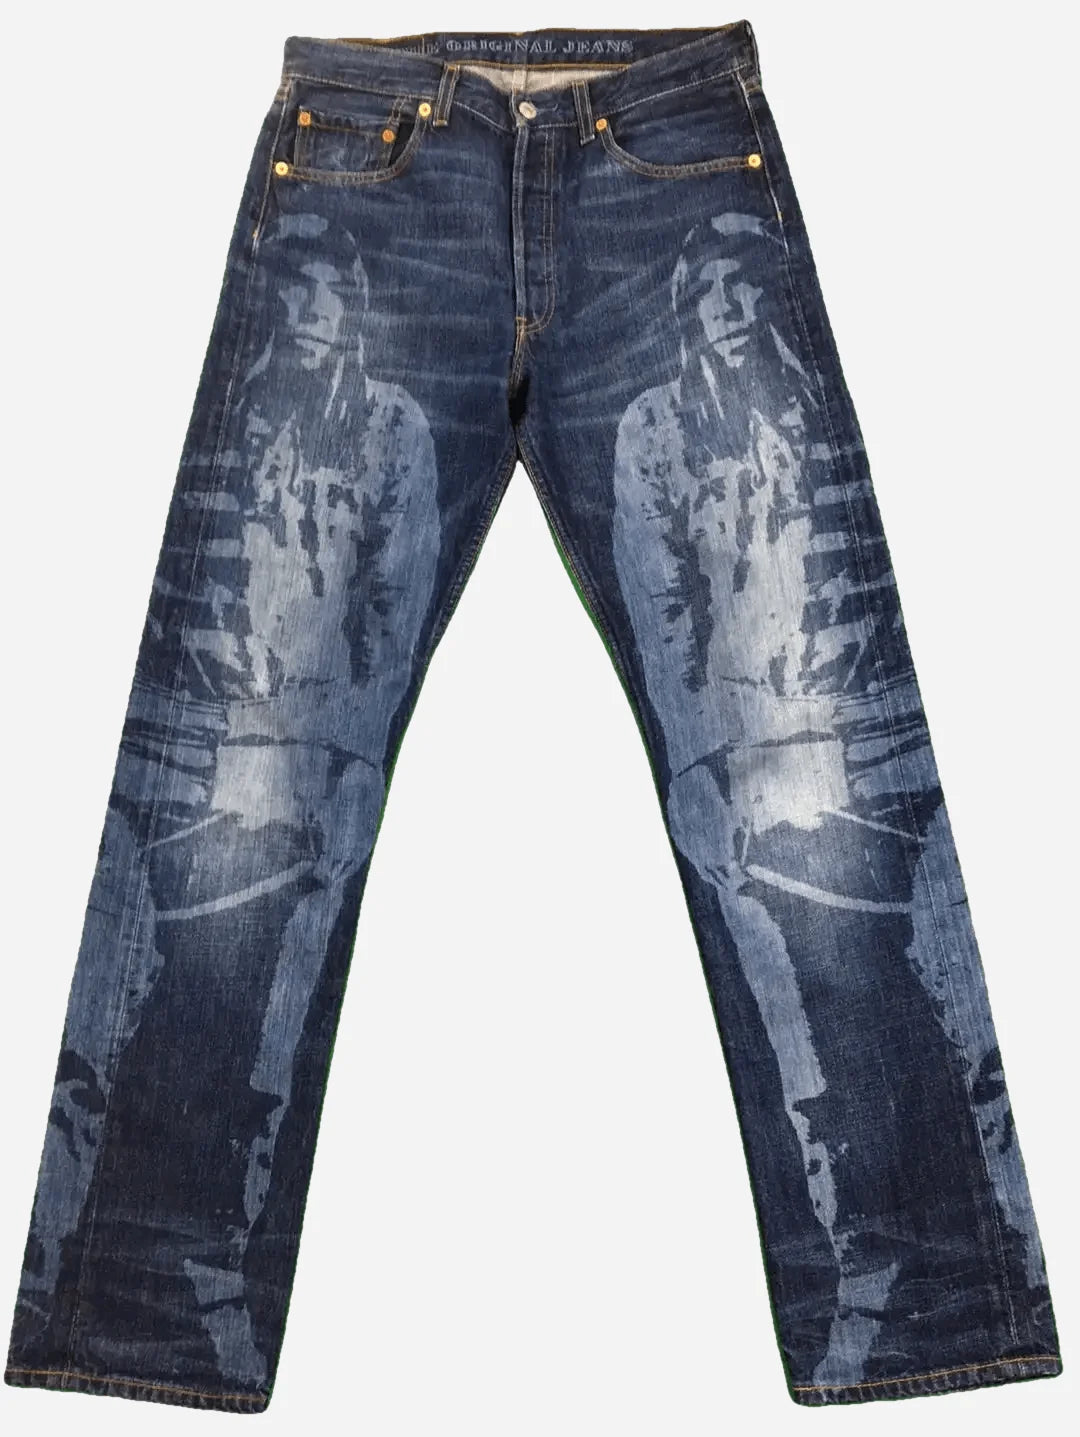 Levi’s 501 Custom Jeans 32/34 (L)